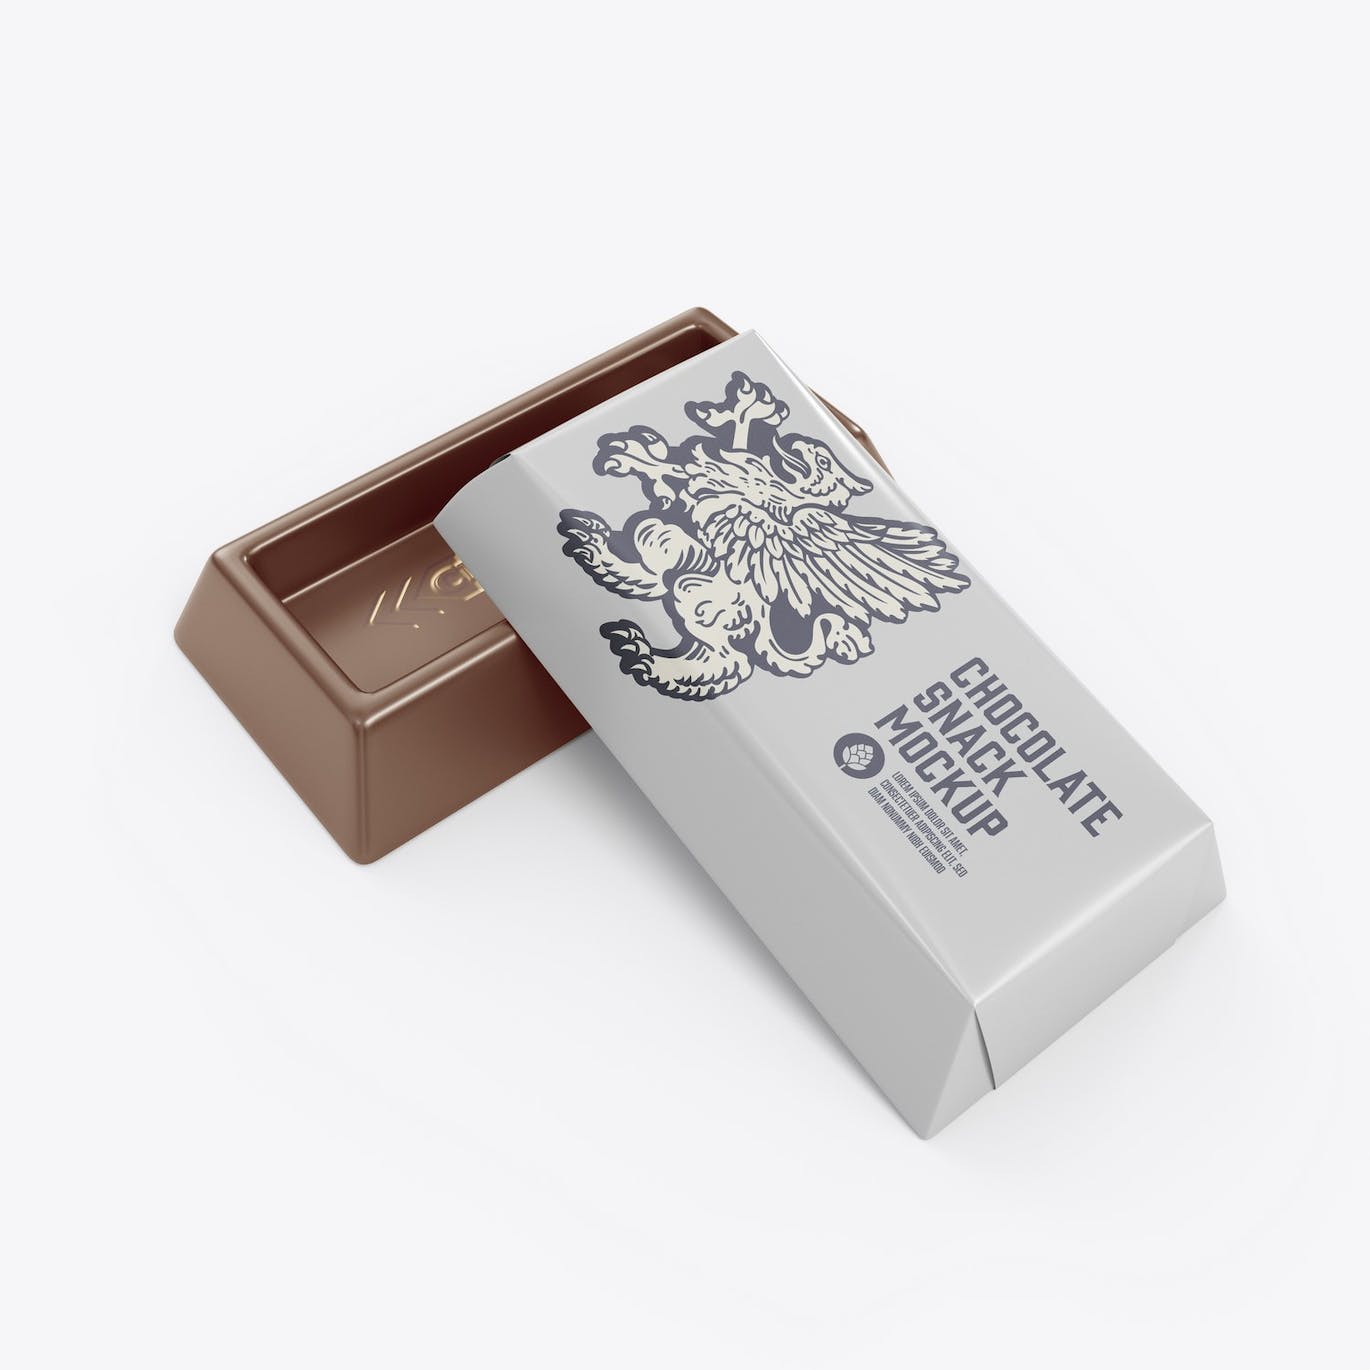 巧克力零食小包装设计样机模板 Small Pack Chocolates Mockup 样机素材 第6张